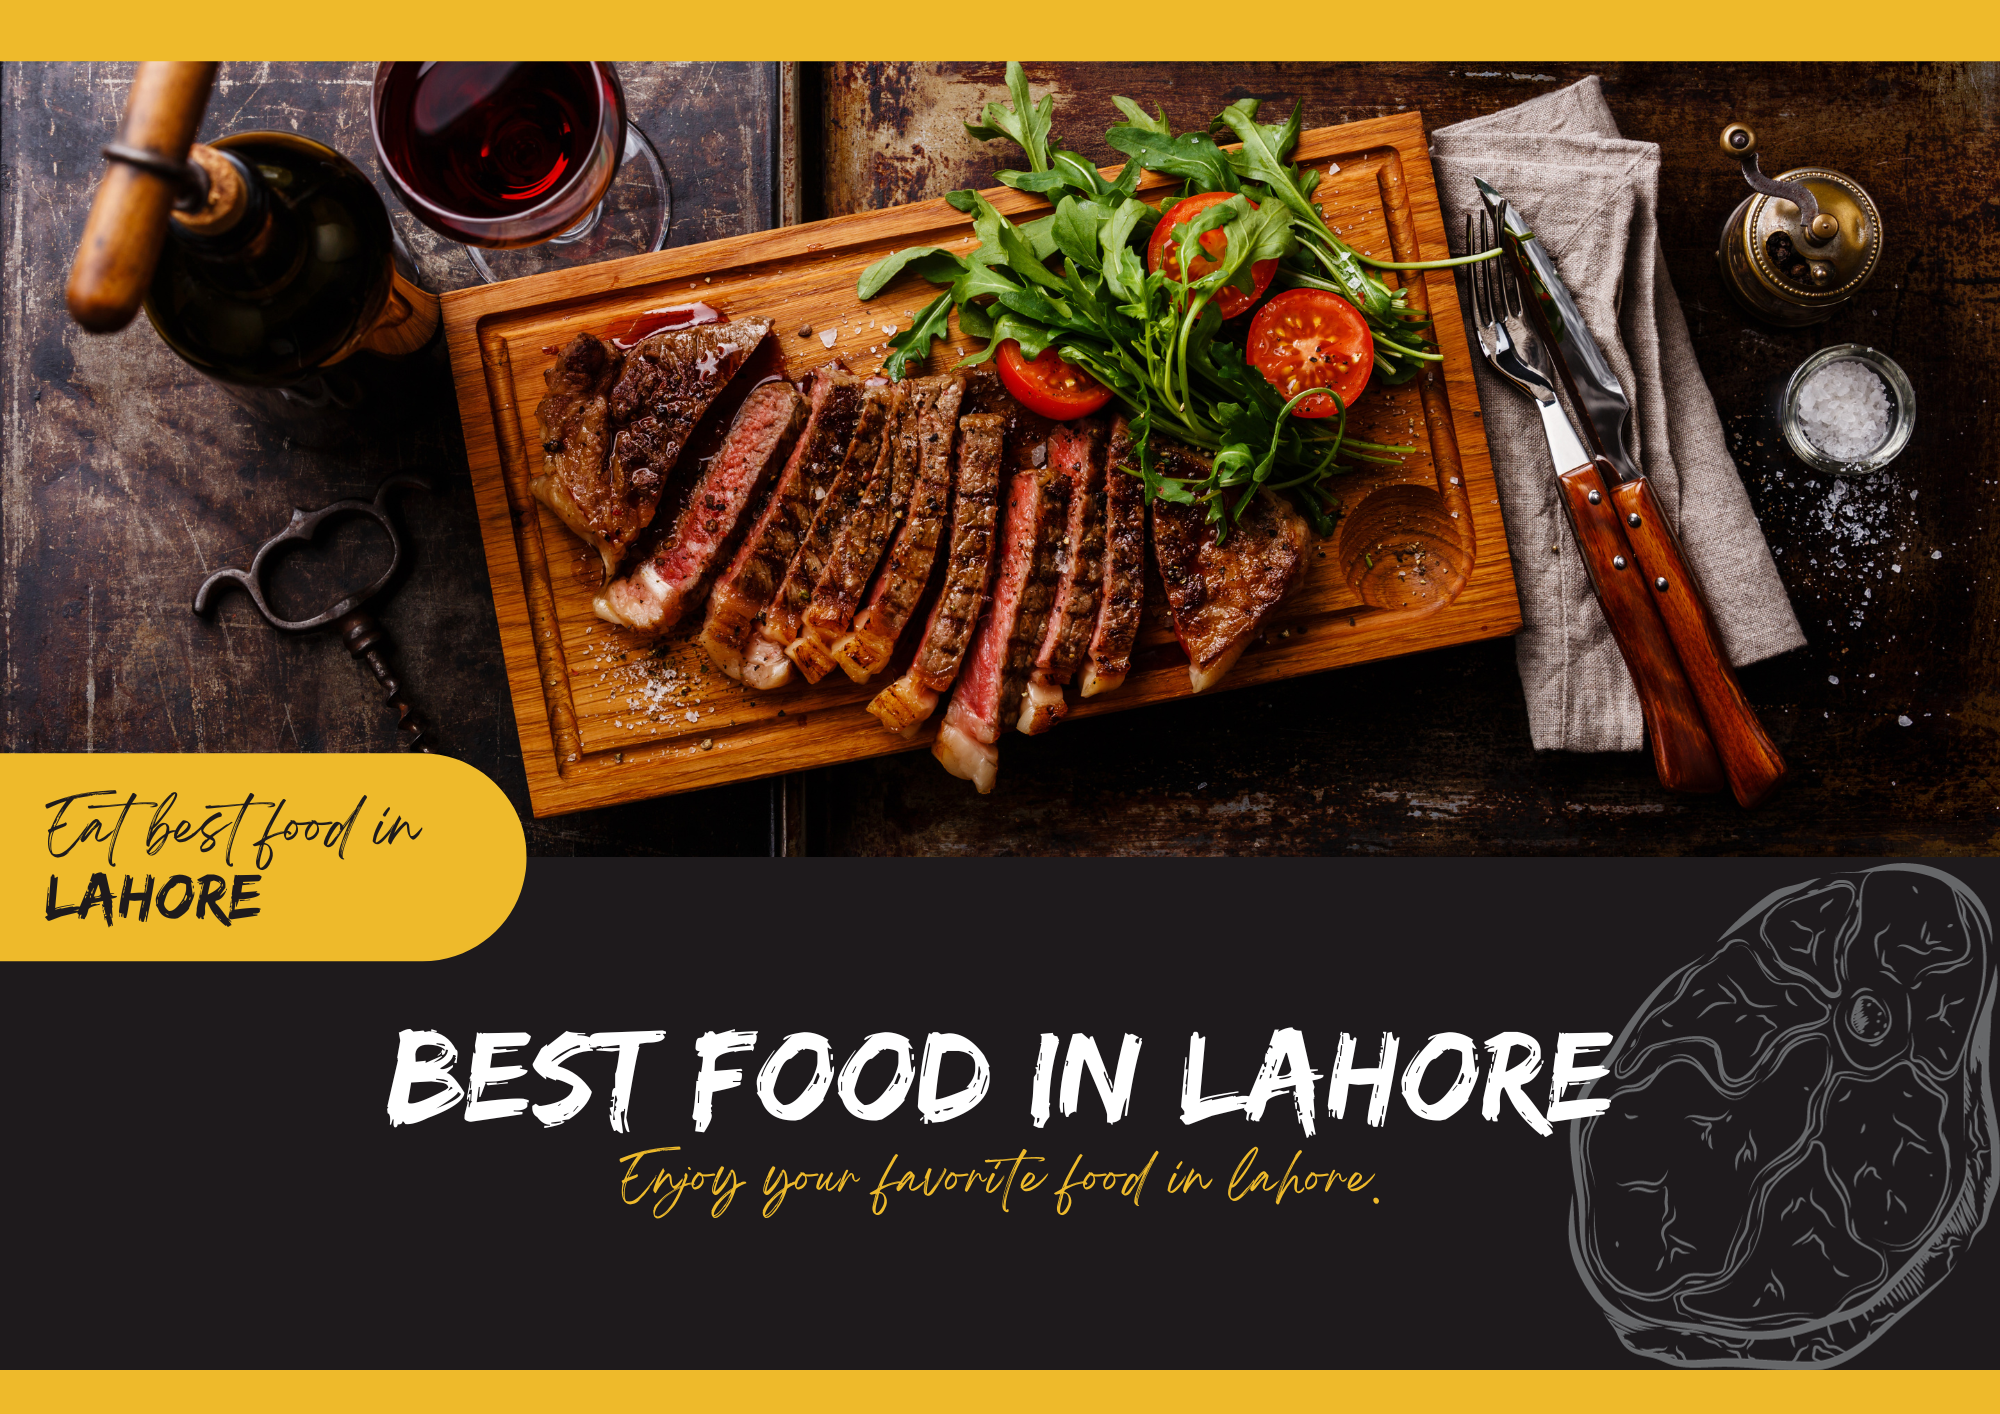 Best Food in Lahore